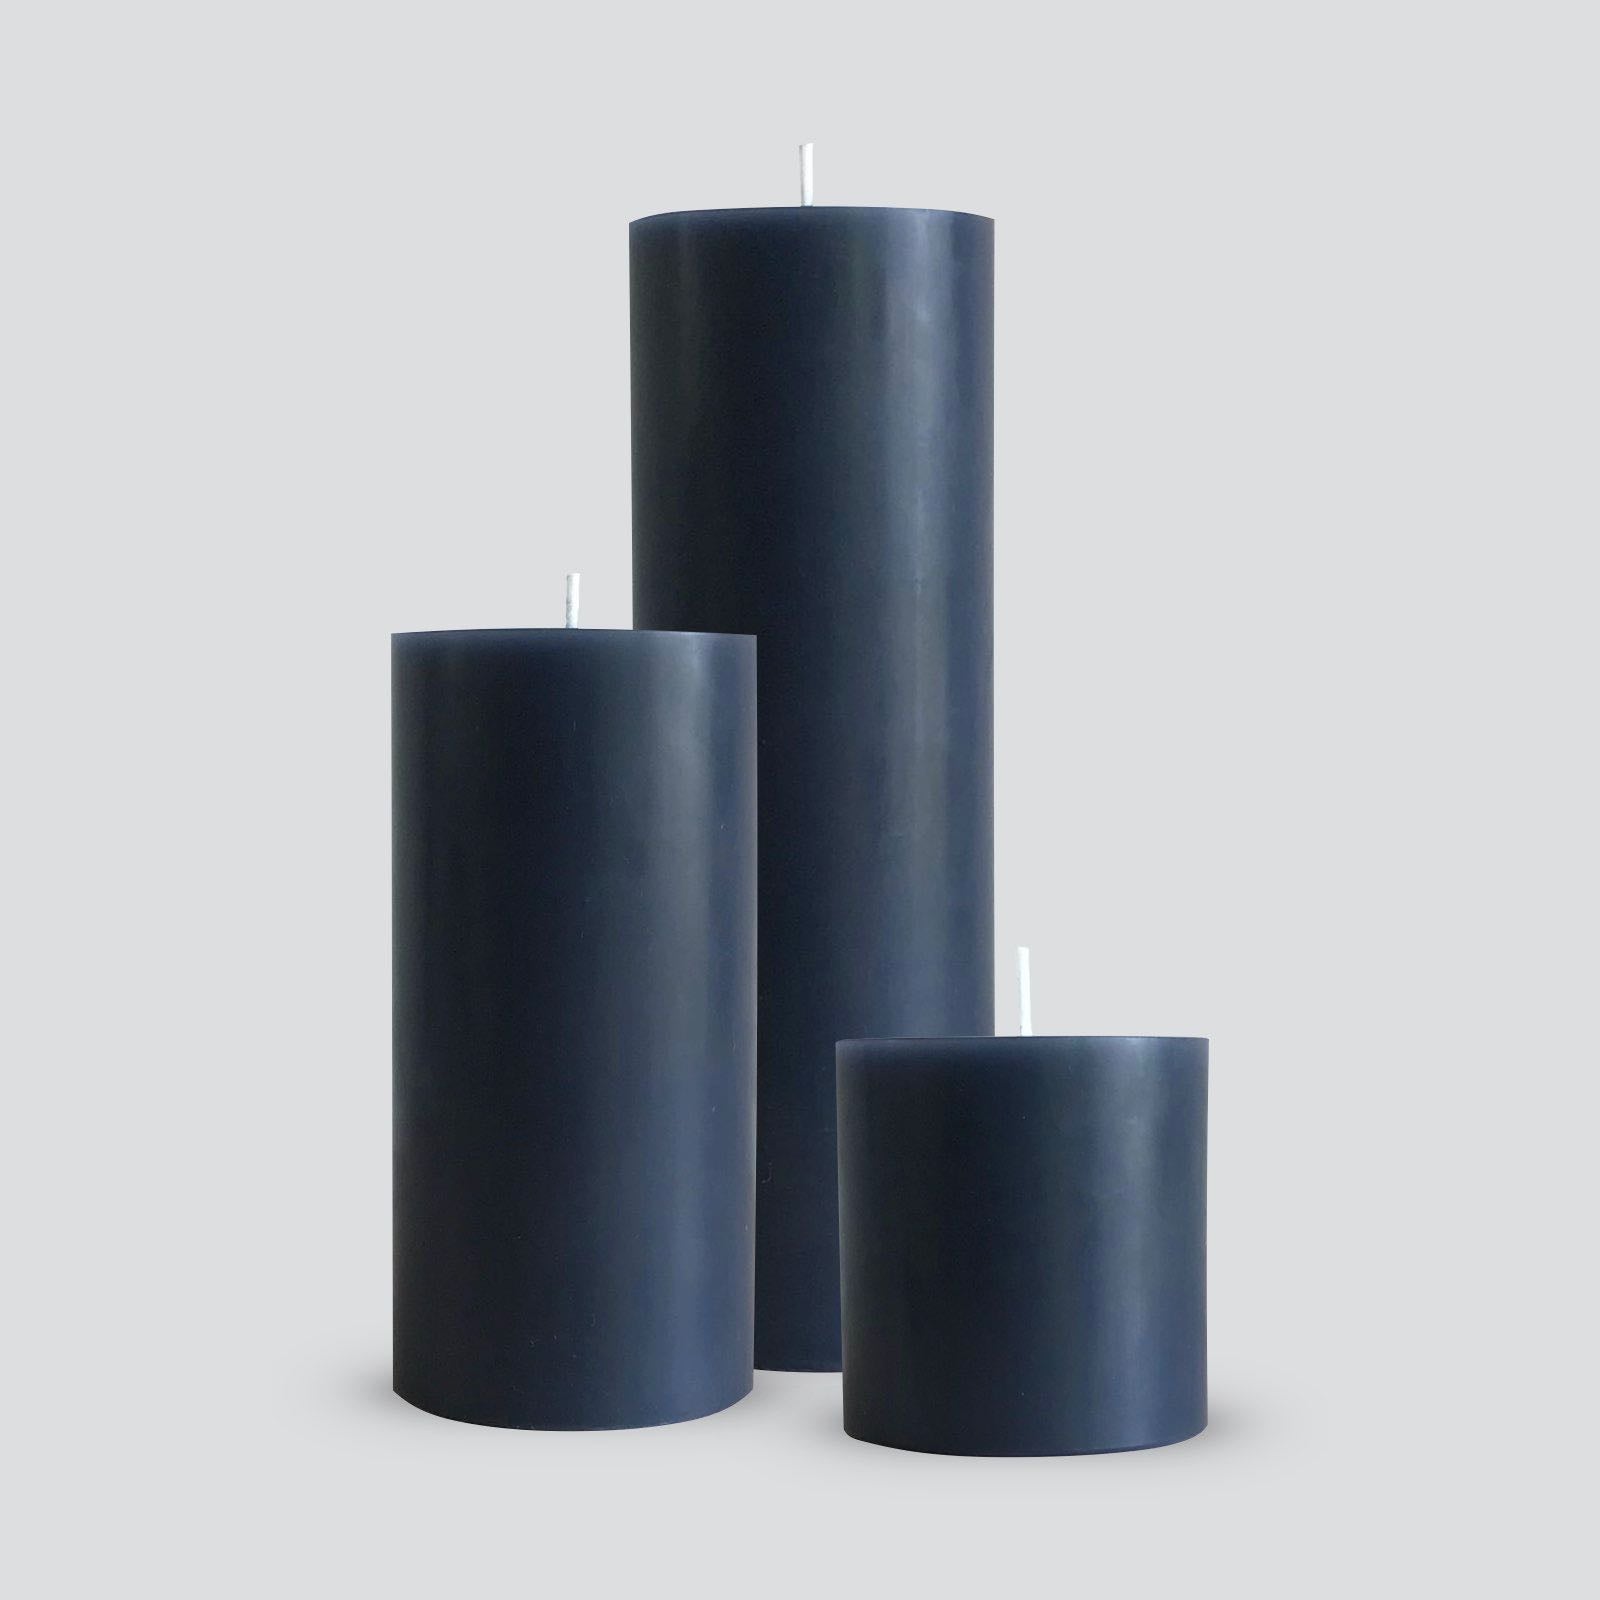 Large grey pillar candles